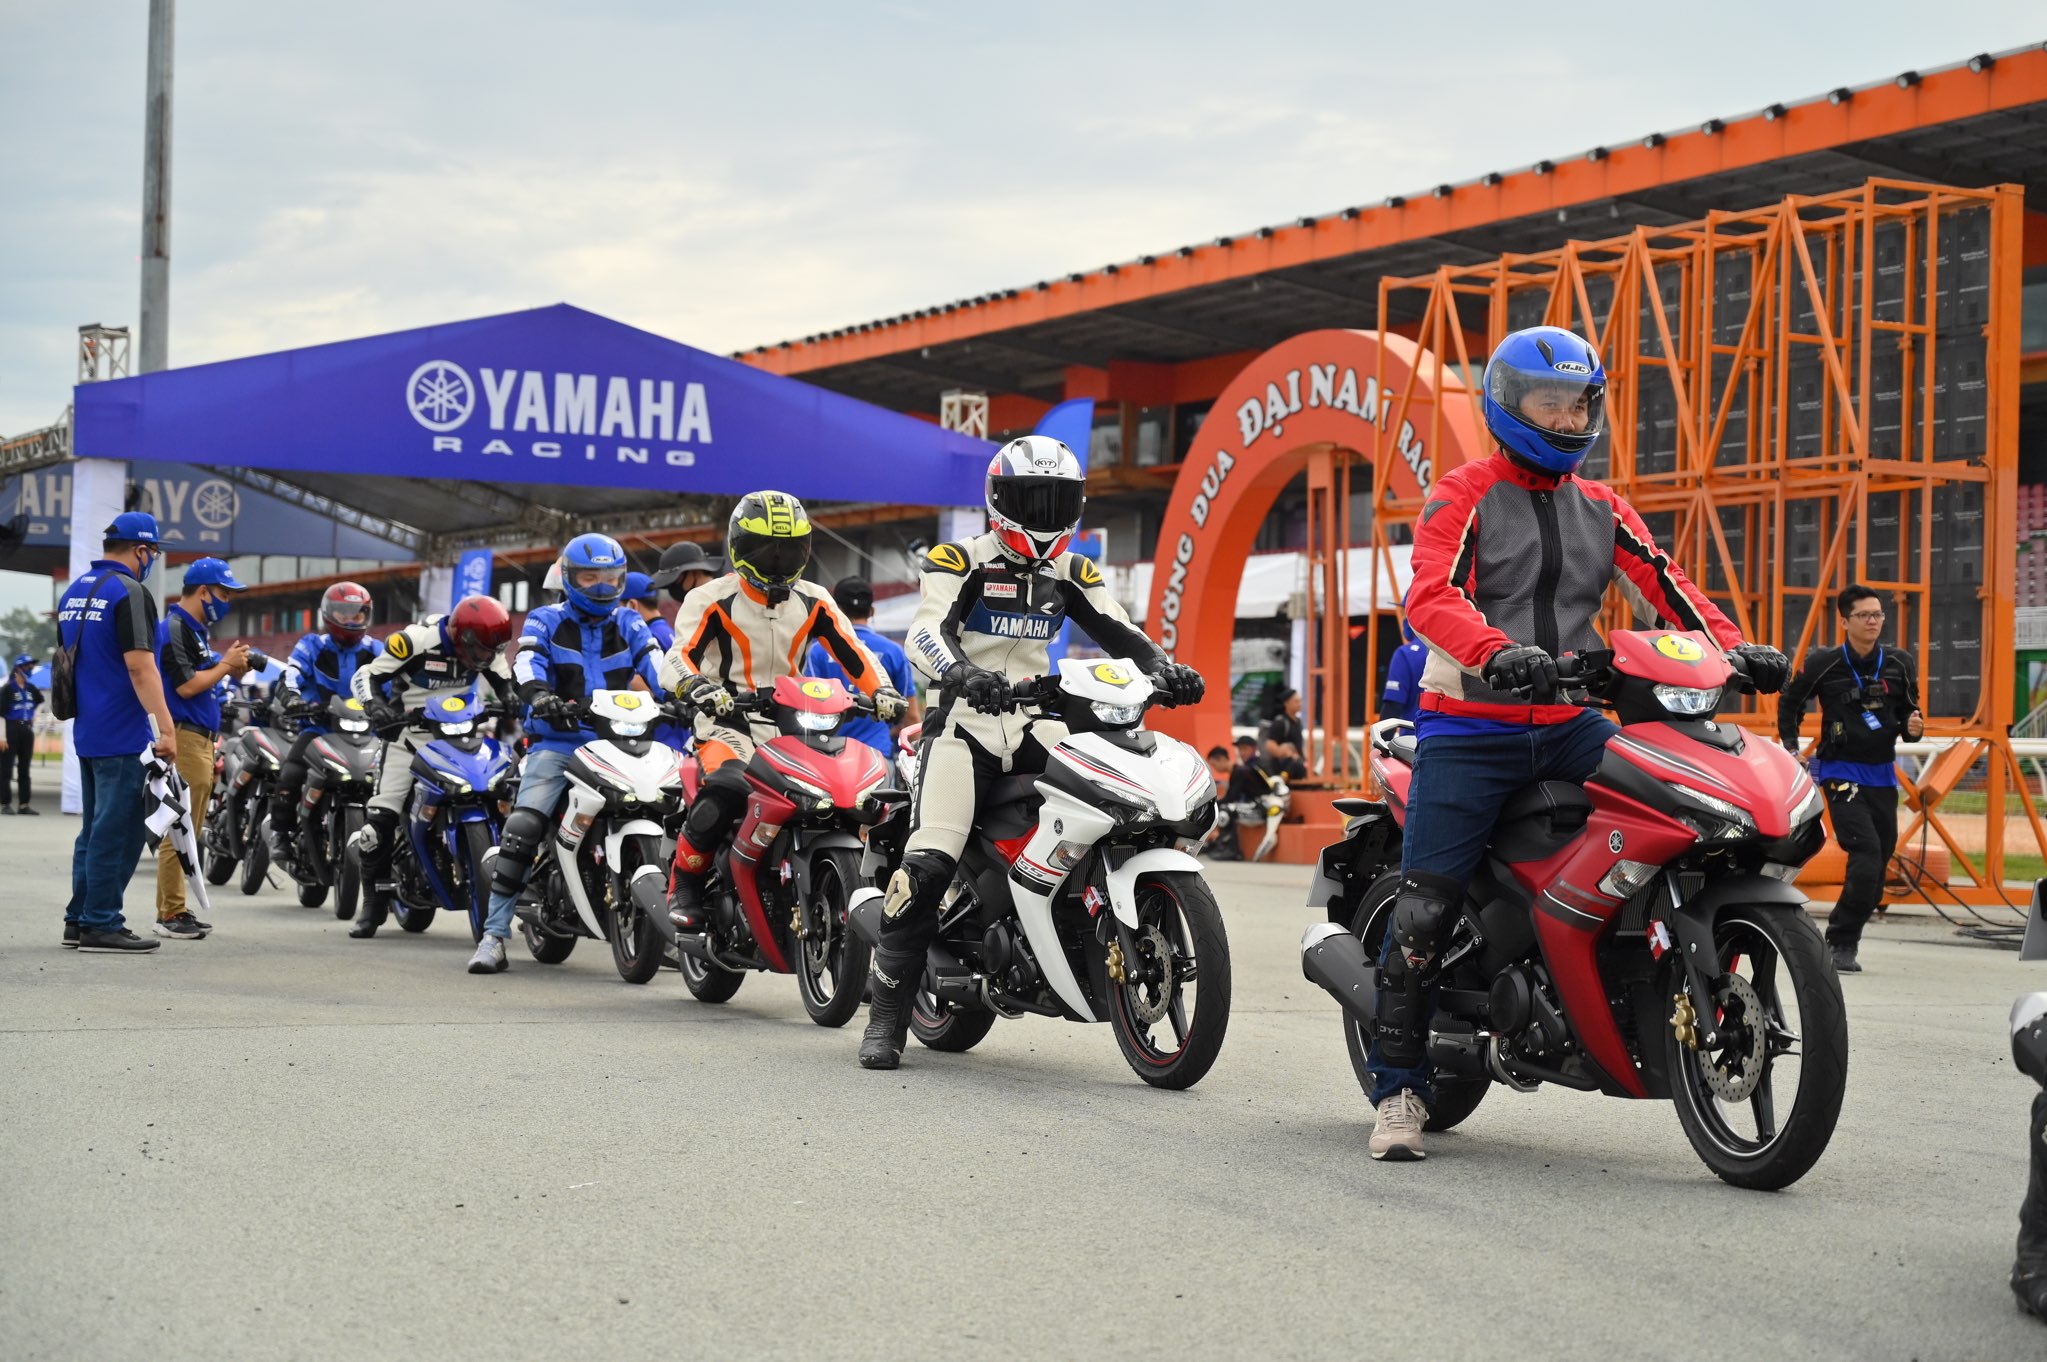 [QC] Yamaha lần đầu tiên mang trường đua Circuit Run tới khách hàng của  “Tiểu R1” – Exciter 155 VVA